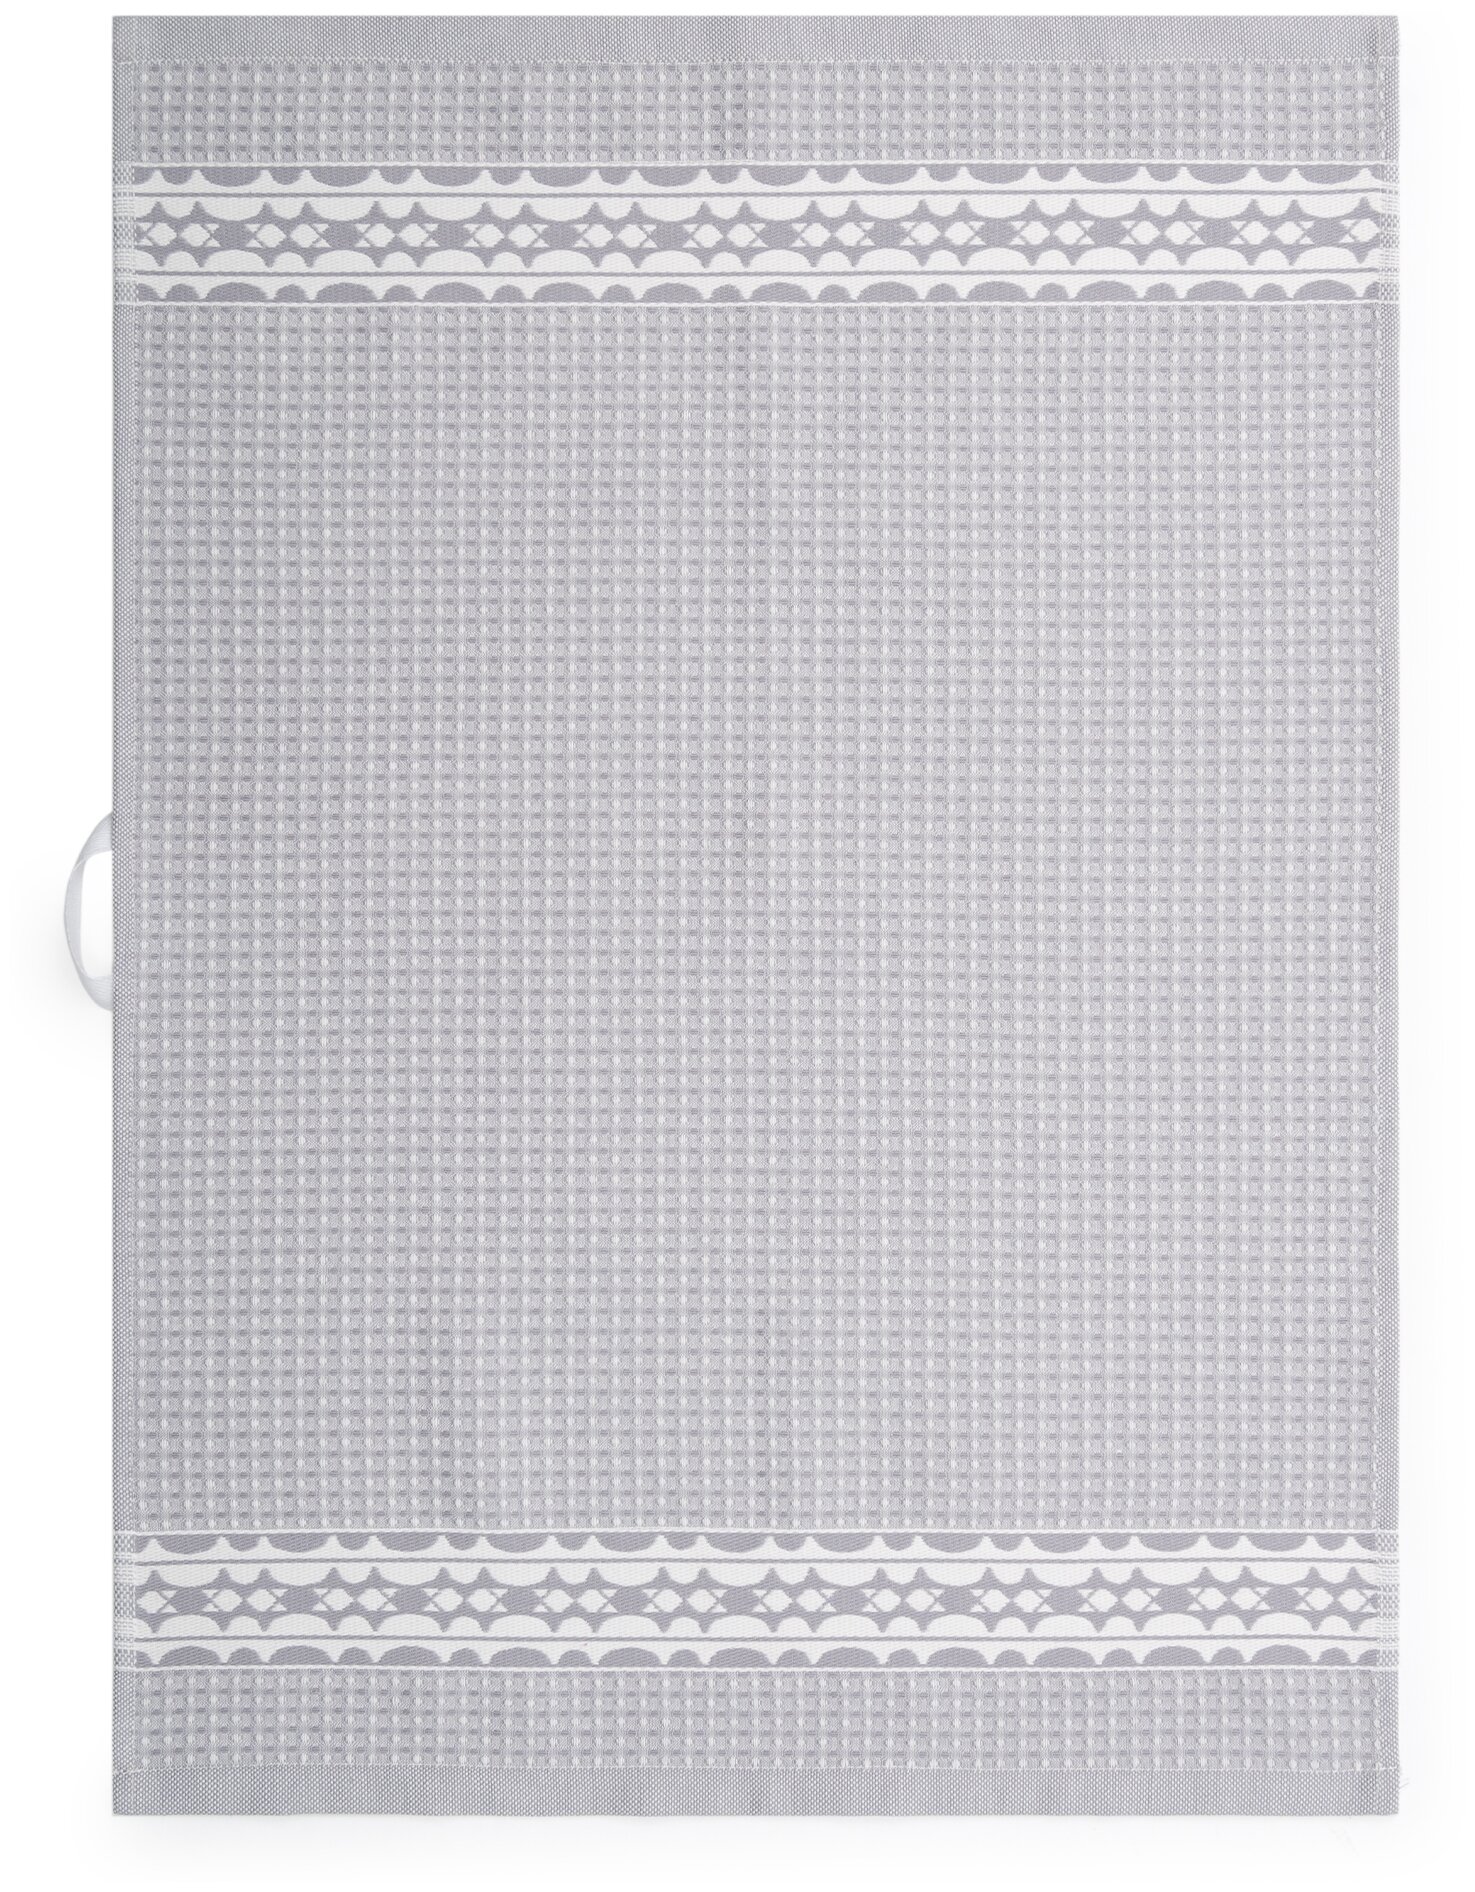 Полотенце кухонное, вафельное Донецкая Мануфактура 50Х70см, цвет: светло-серый, 100% хлопок - фотография № 9